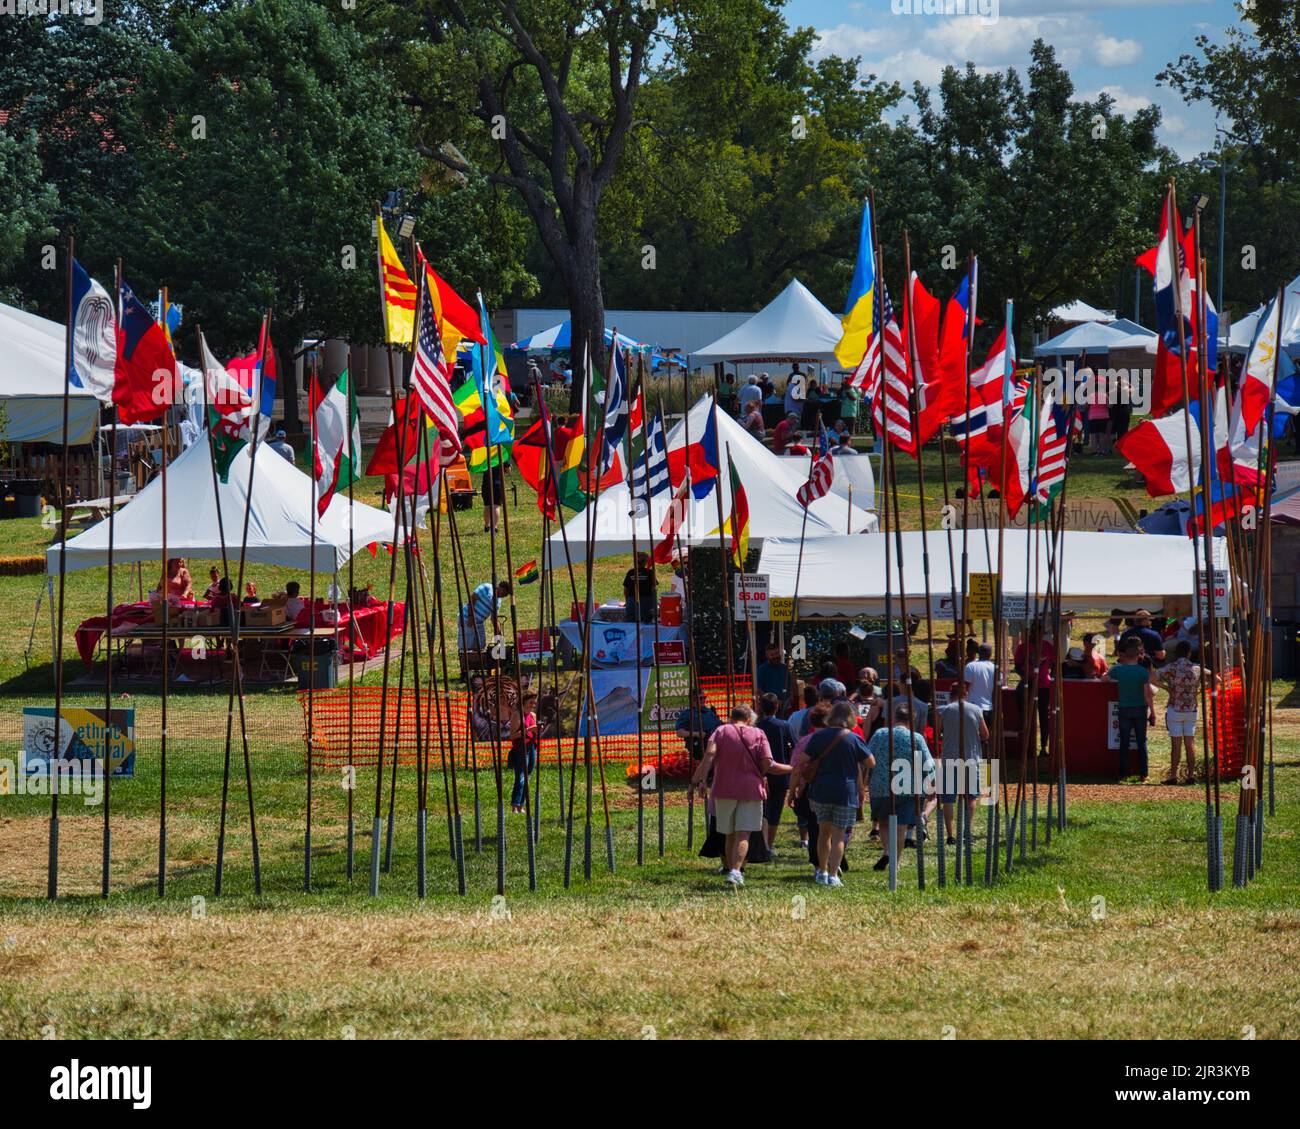 Kansas City, Missouri - 20 août 2022 - Festival d'enrichissement ethnique à Swope Park - photo de la foule Banque D'Images